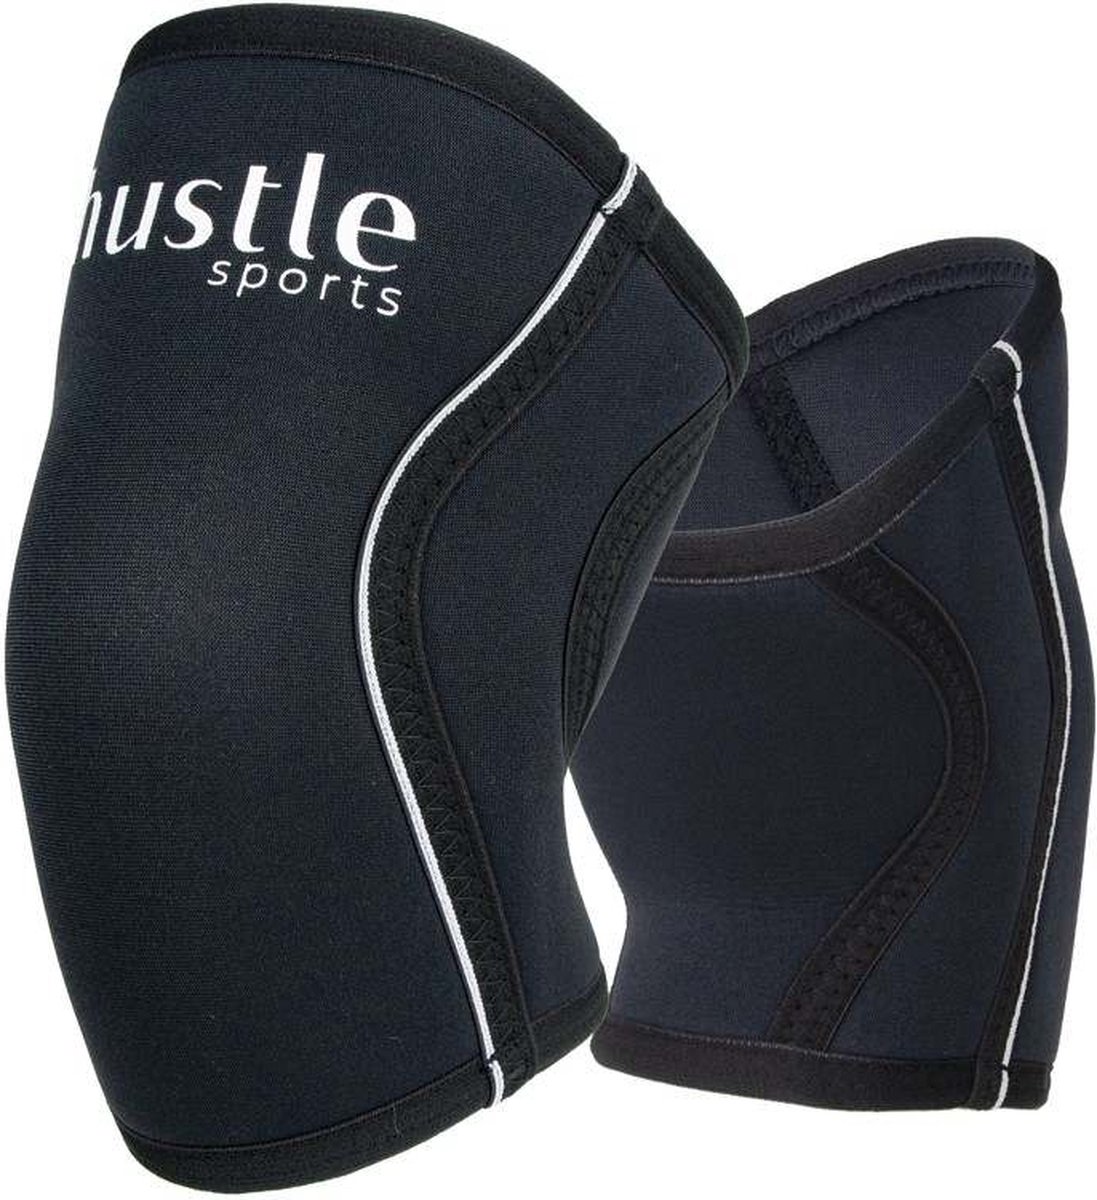 hustle - hustle sports - 2 Stuks Knee sleeves - 7MM - Powerlifting - Kniebrace - Knieband - Krachttraining Accesoires - Squats - Fitness, Bodybuilding en Crossfit - Zwart met Wit - Maat: L